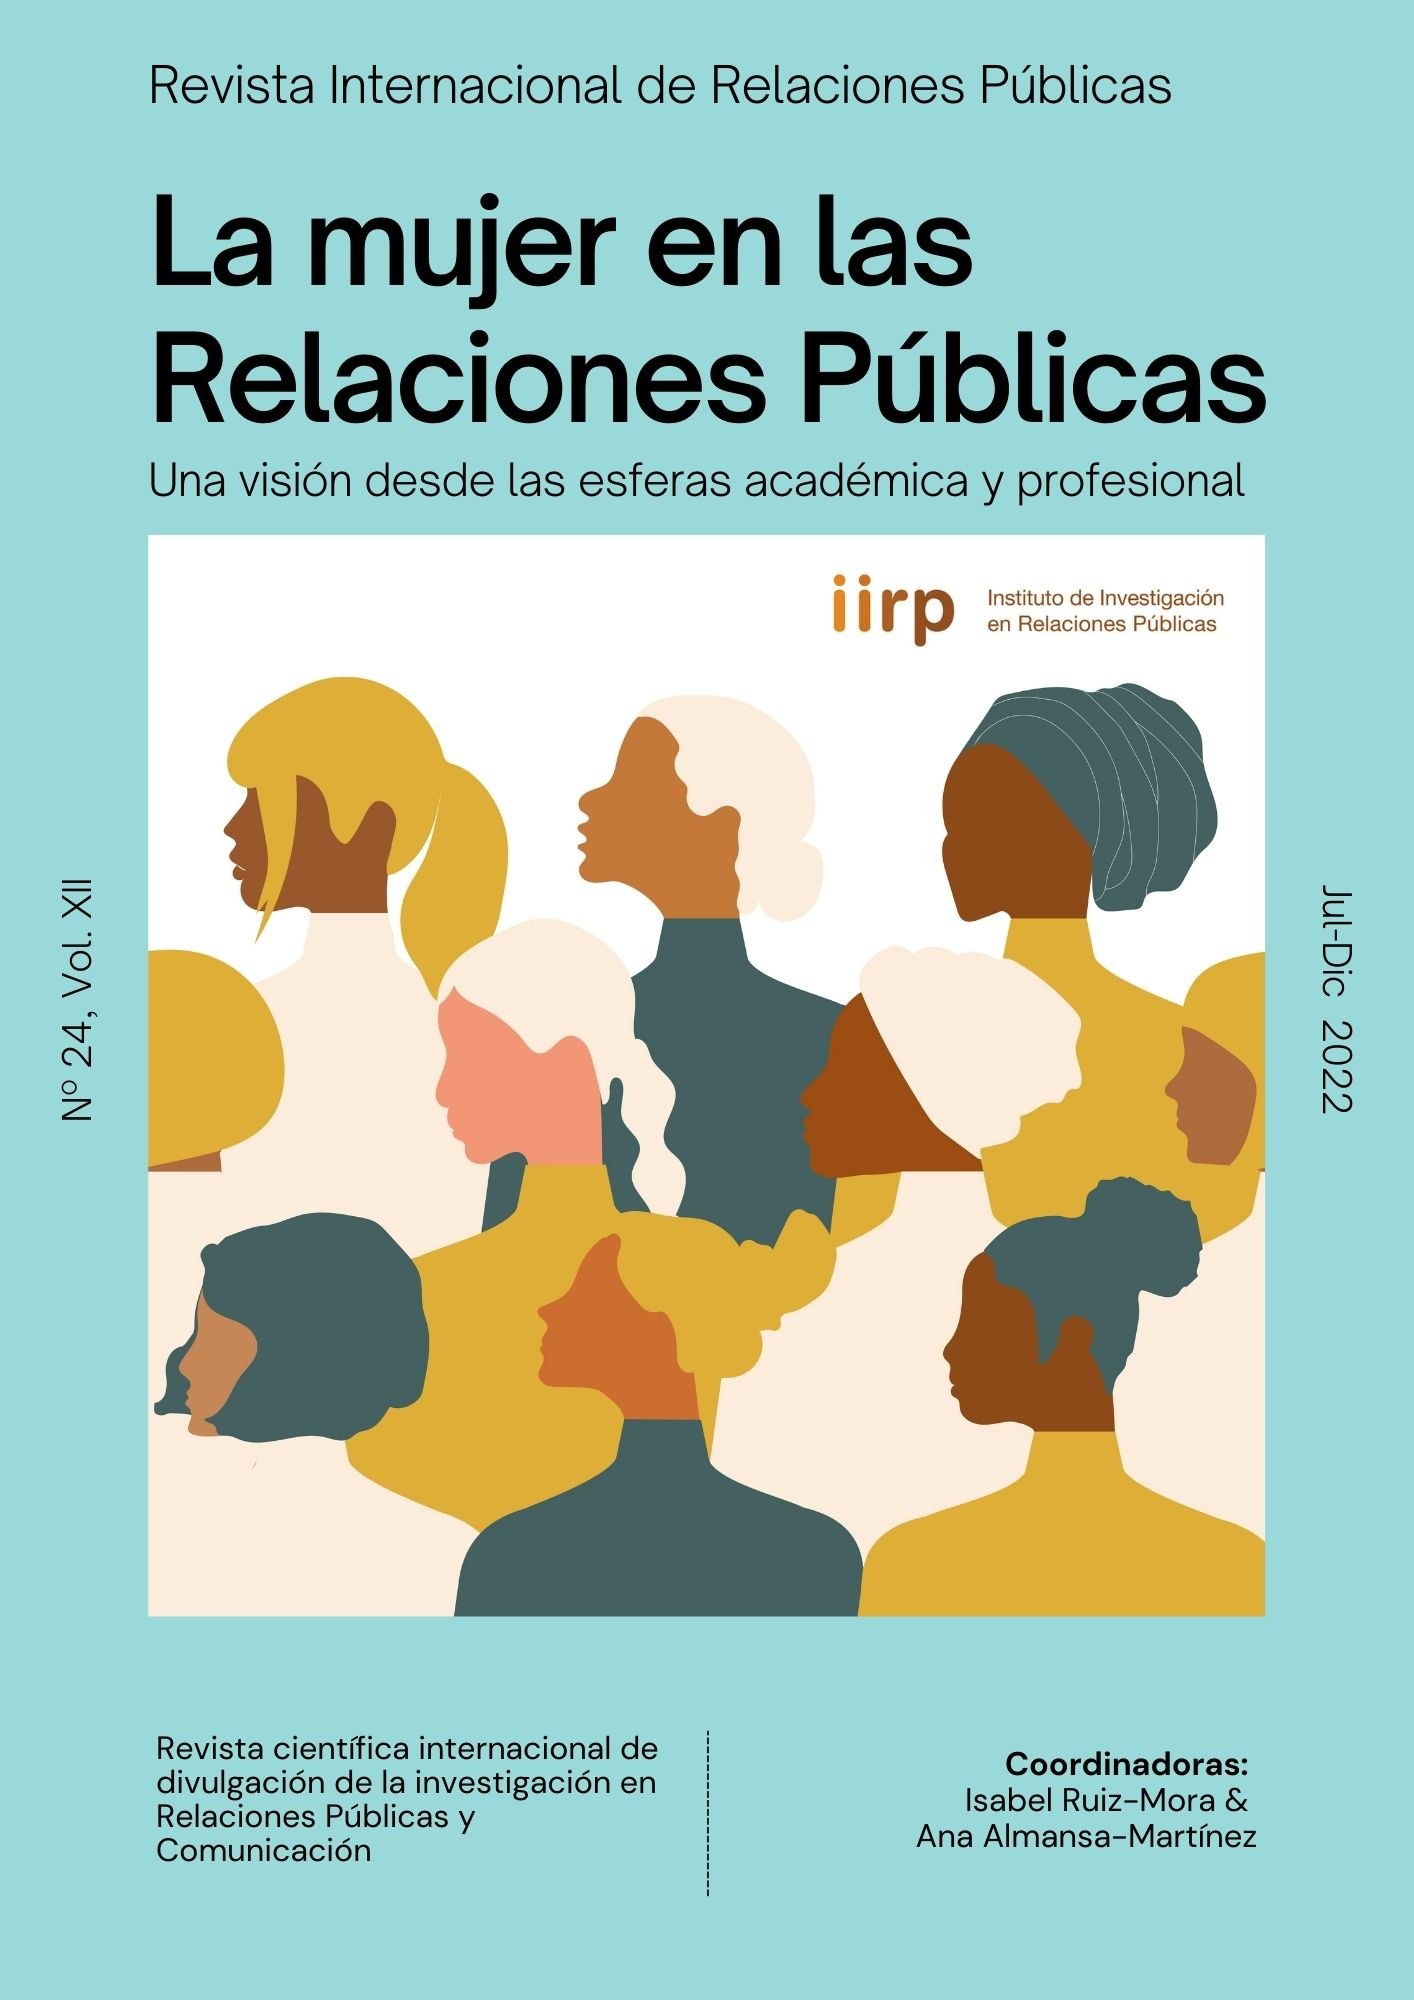 La mujer en las Relaciones Públicas: una visión desde las esferas académica y profesional